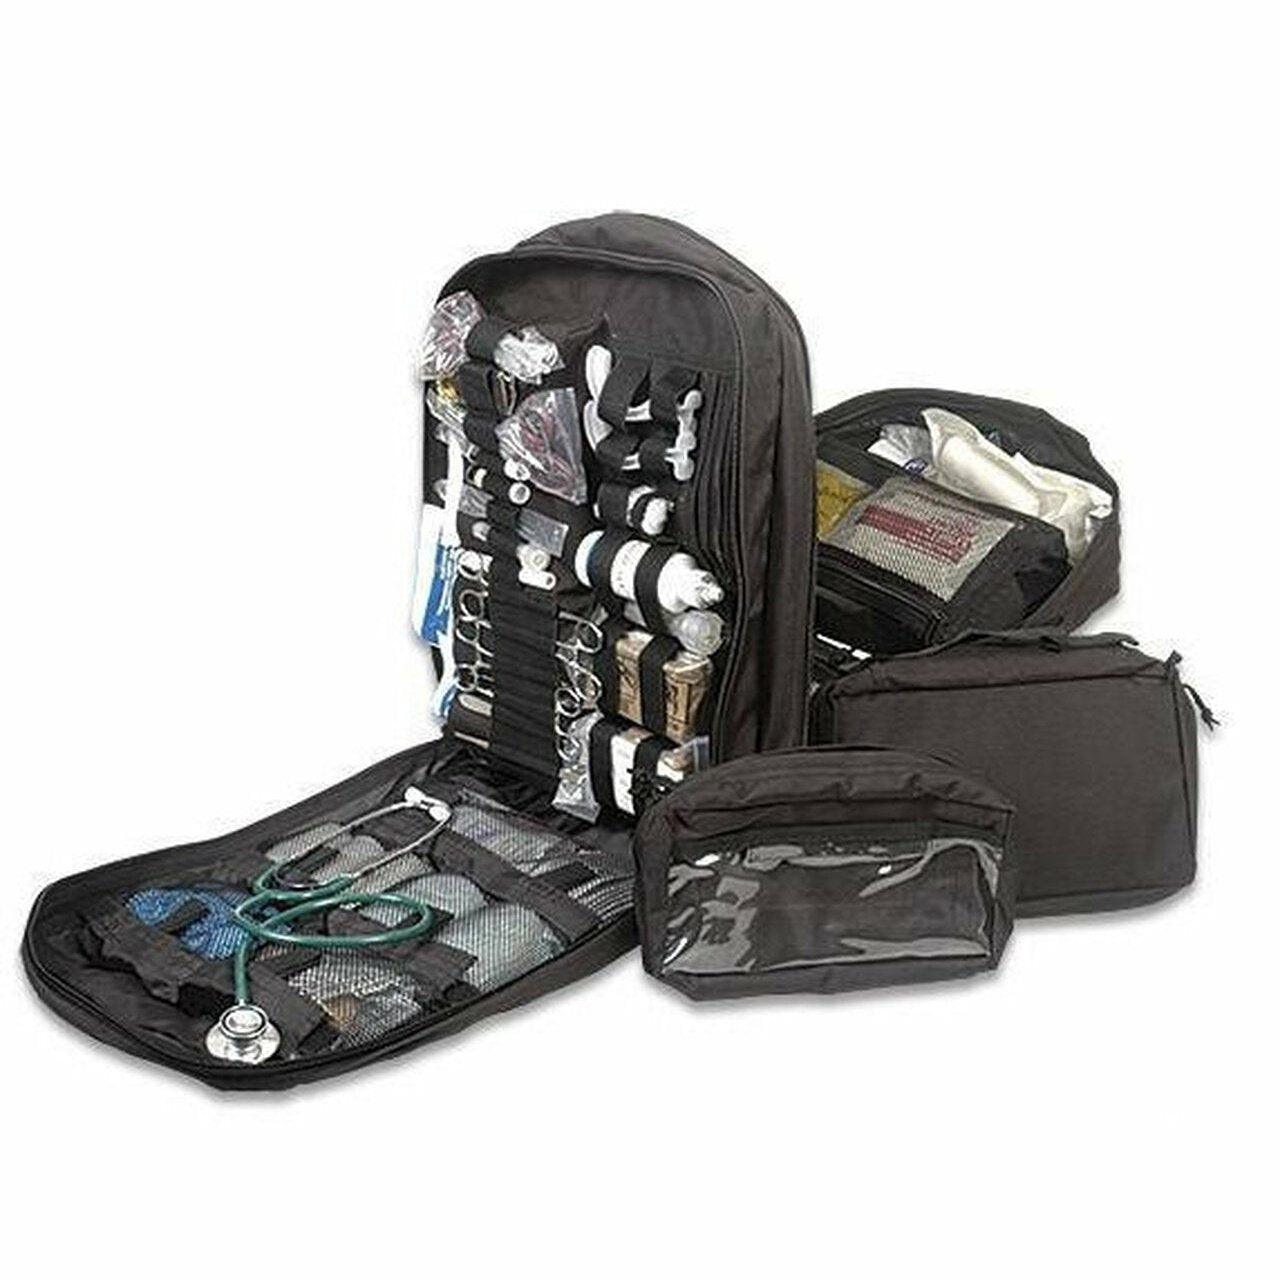 STOMP Tactical Medic Bag - Vendor